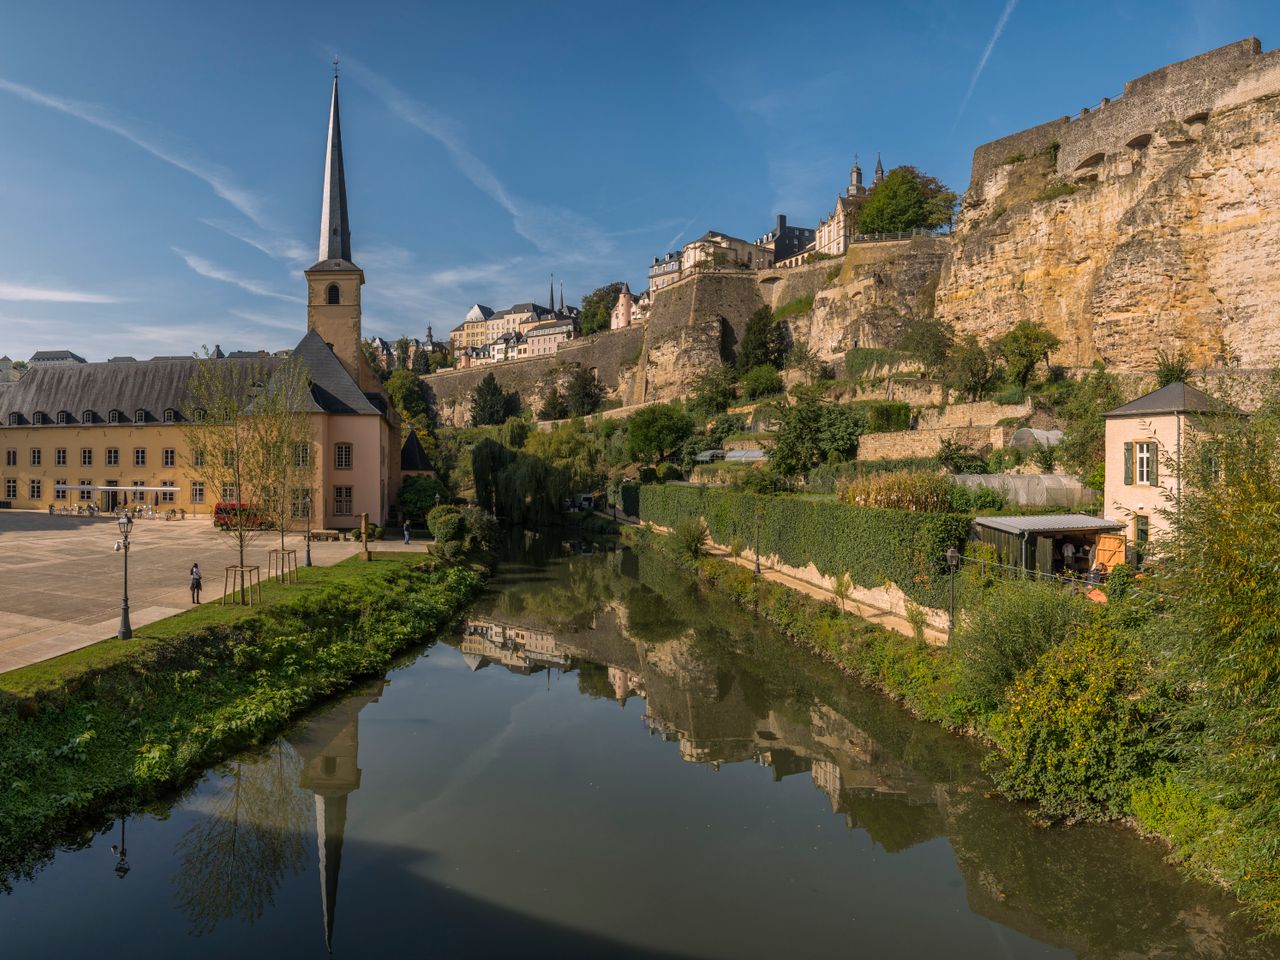 Wochenende in Luxemburg- Stadt, Kultur & Natur |3 Tg.